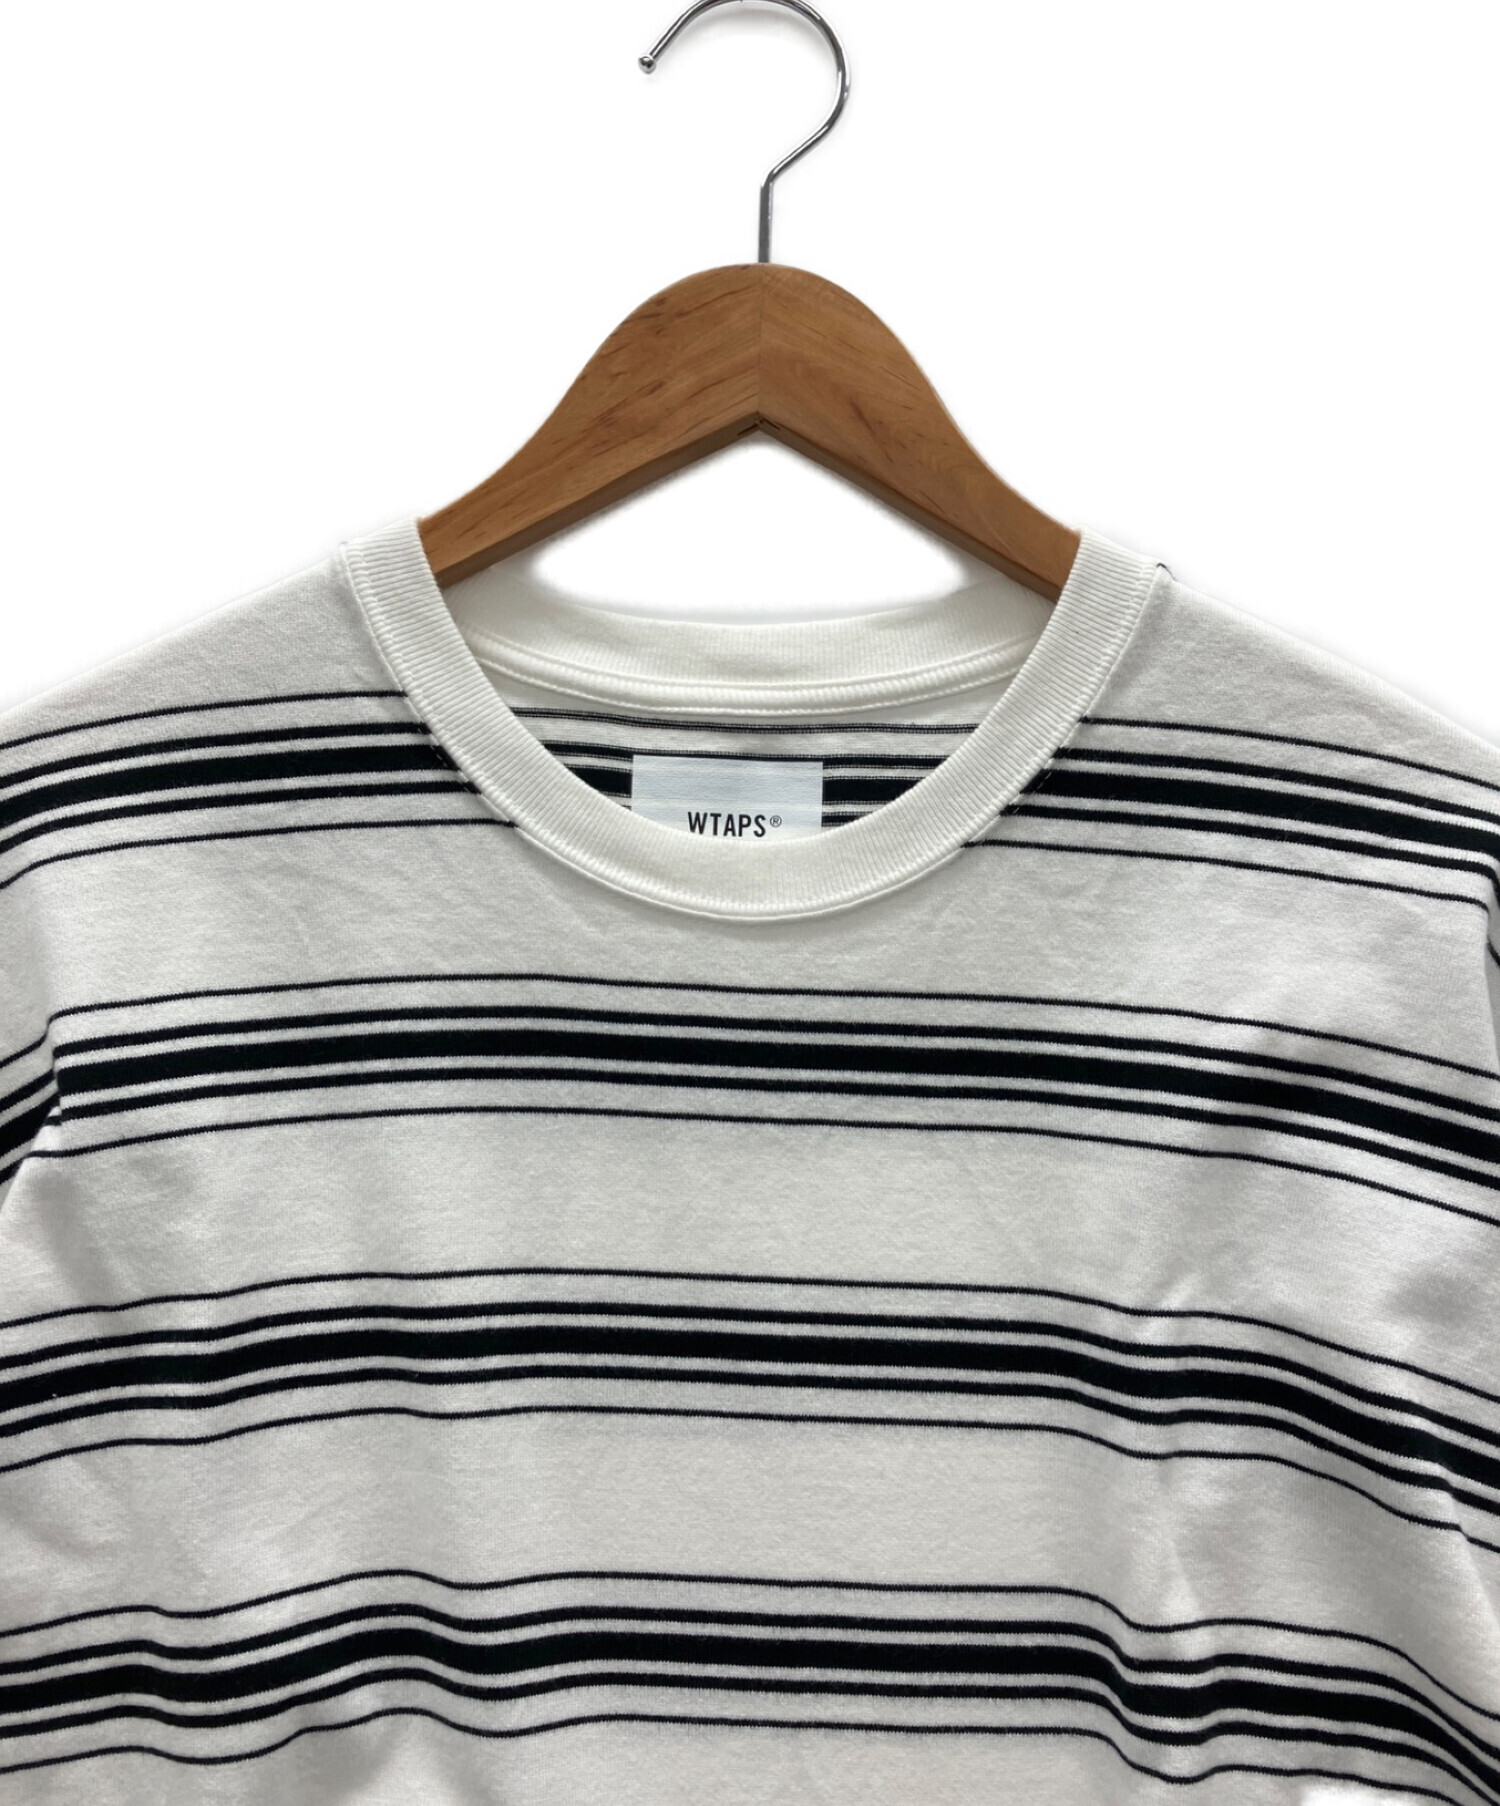 WTAPS (ダブルタップス) ロングスリーブTシャツ ホワイト サイズ:X02